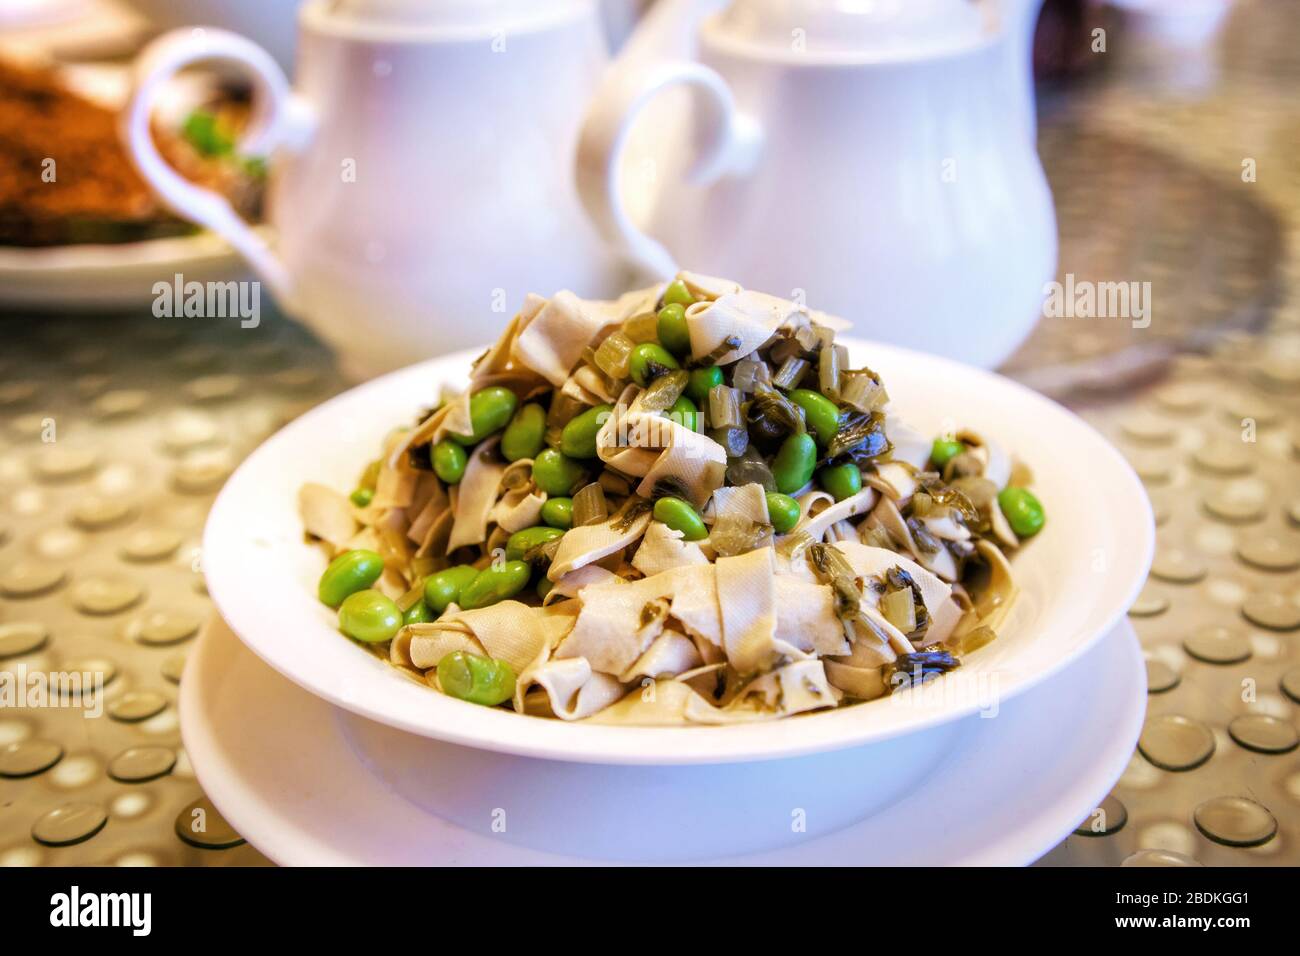 Beliebte chinesische vegetarische Küche mit breiten Bohnen, gebraten mit Tofustreifen und eingelegtem Schneekohl. Stockfoto